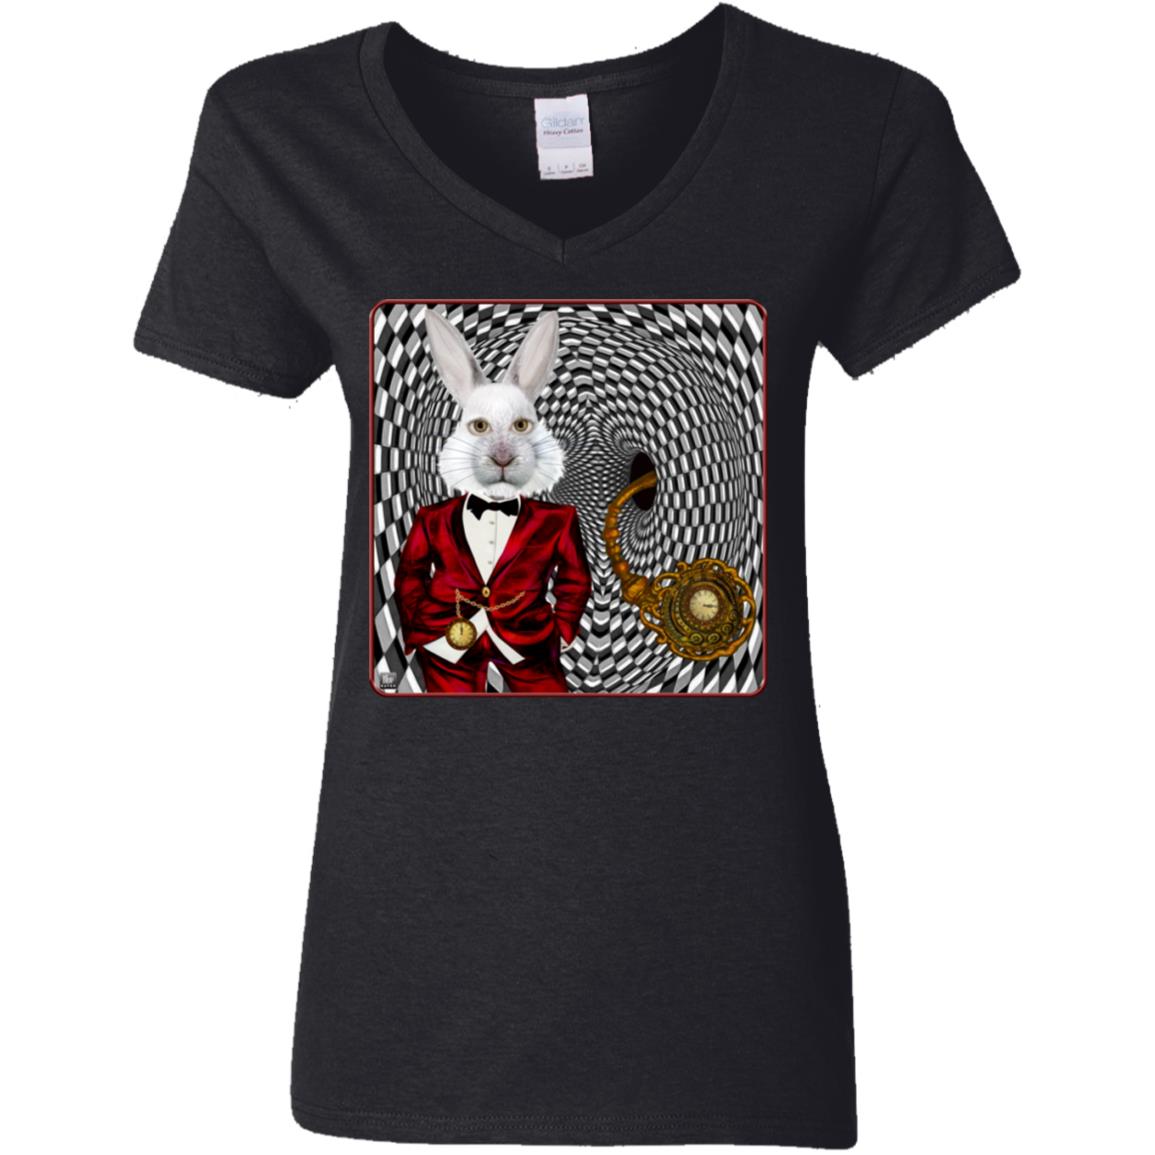 Portrait Of The White Rabbit - Women's V-Neck T Shirt